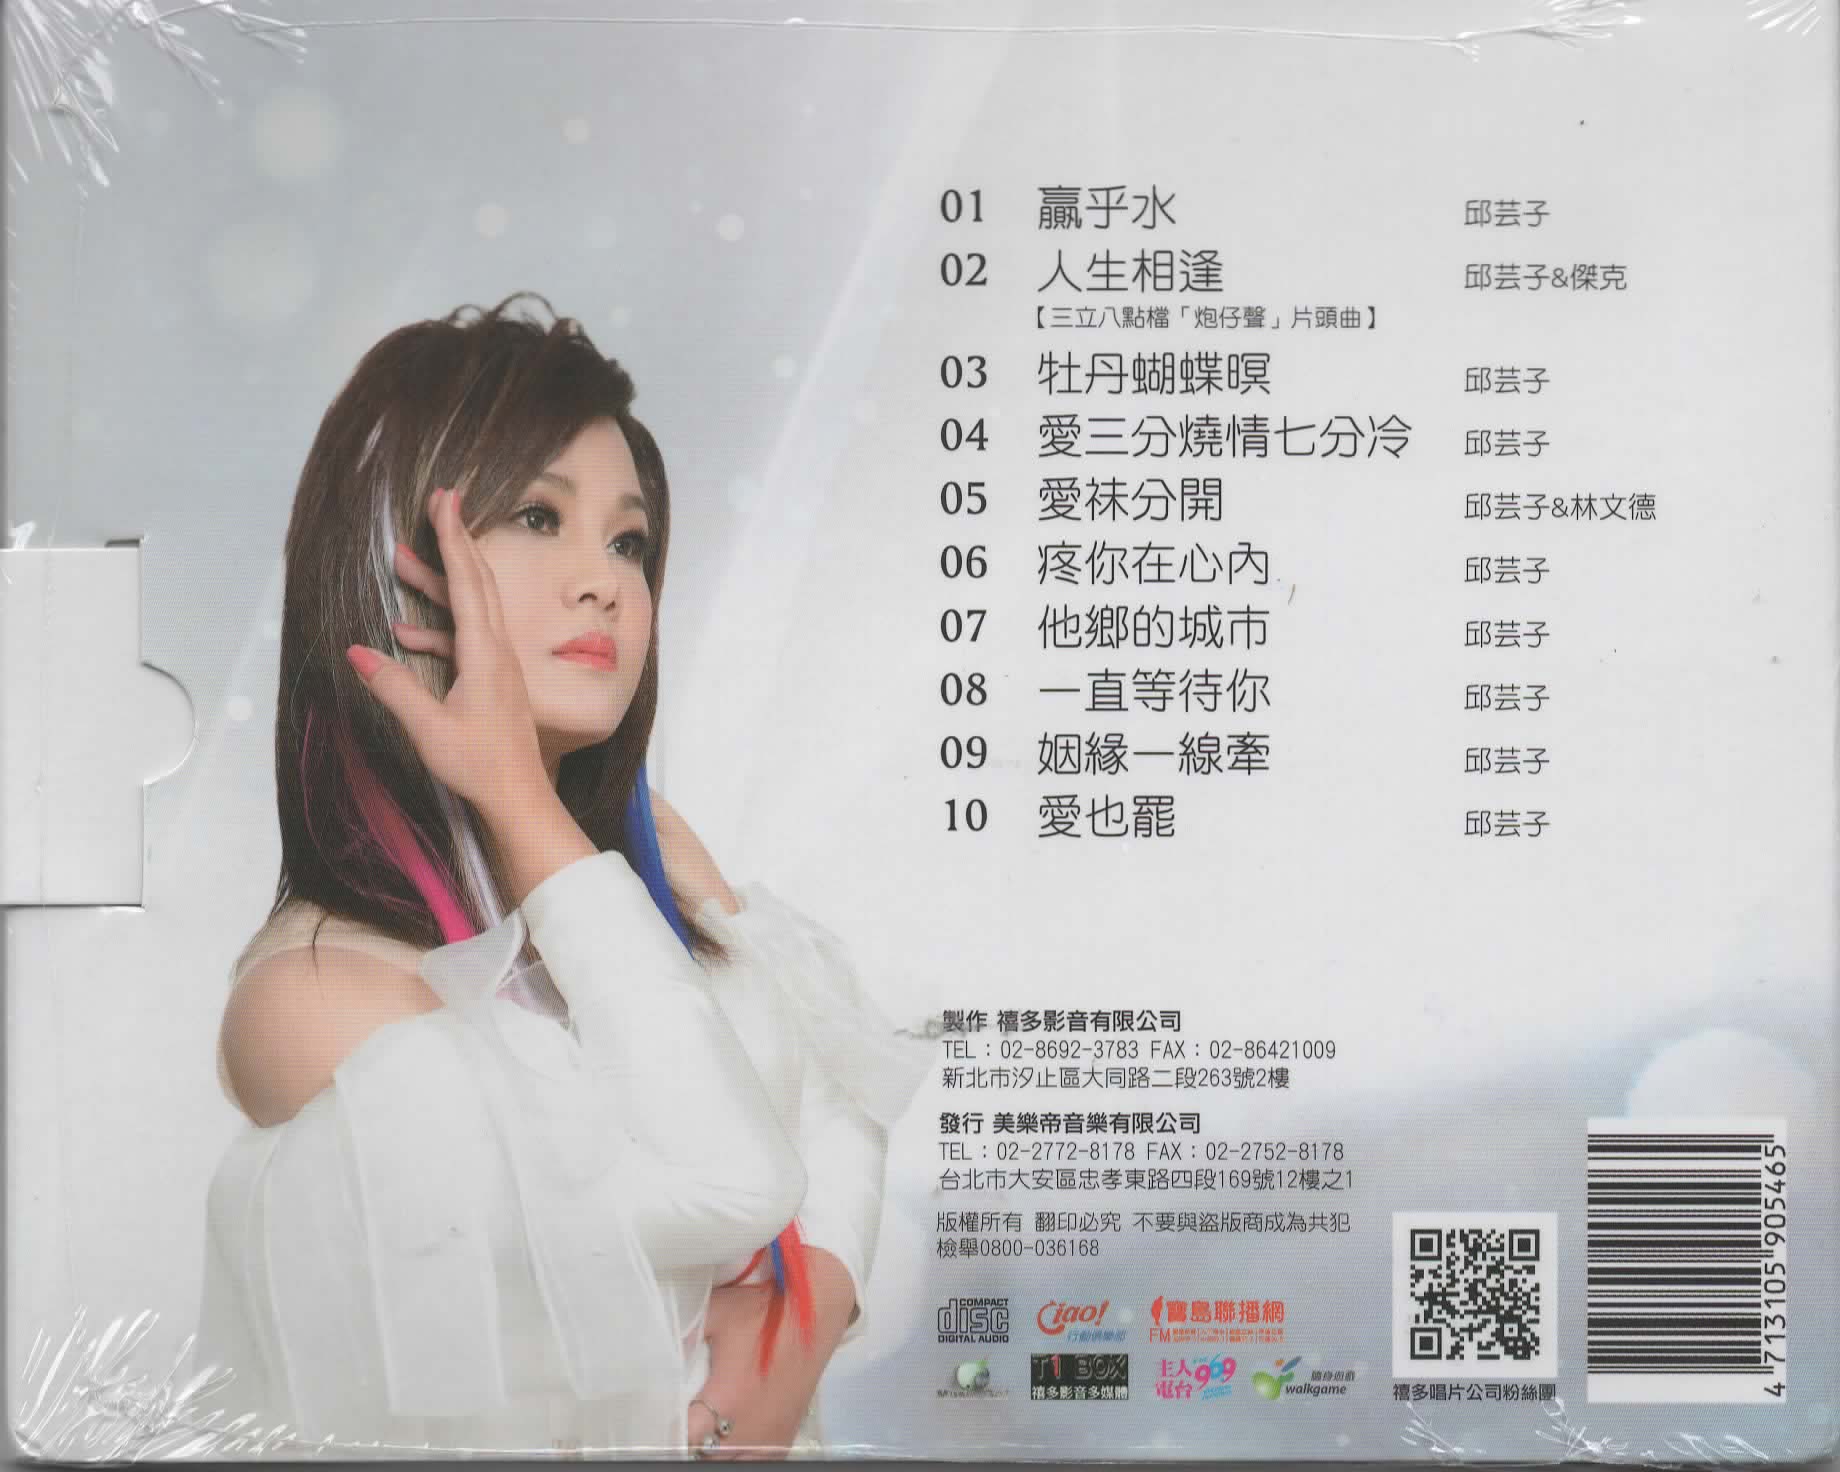 邱芸子-贏乎水CD(禧多)(mega) MI1562834598